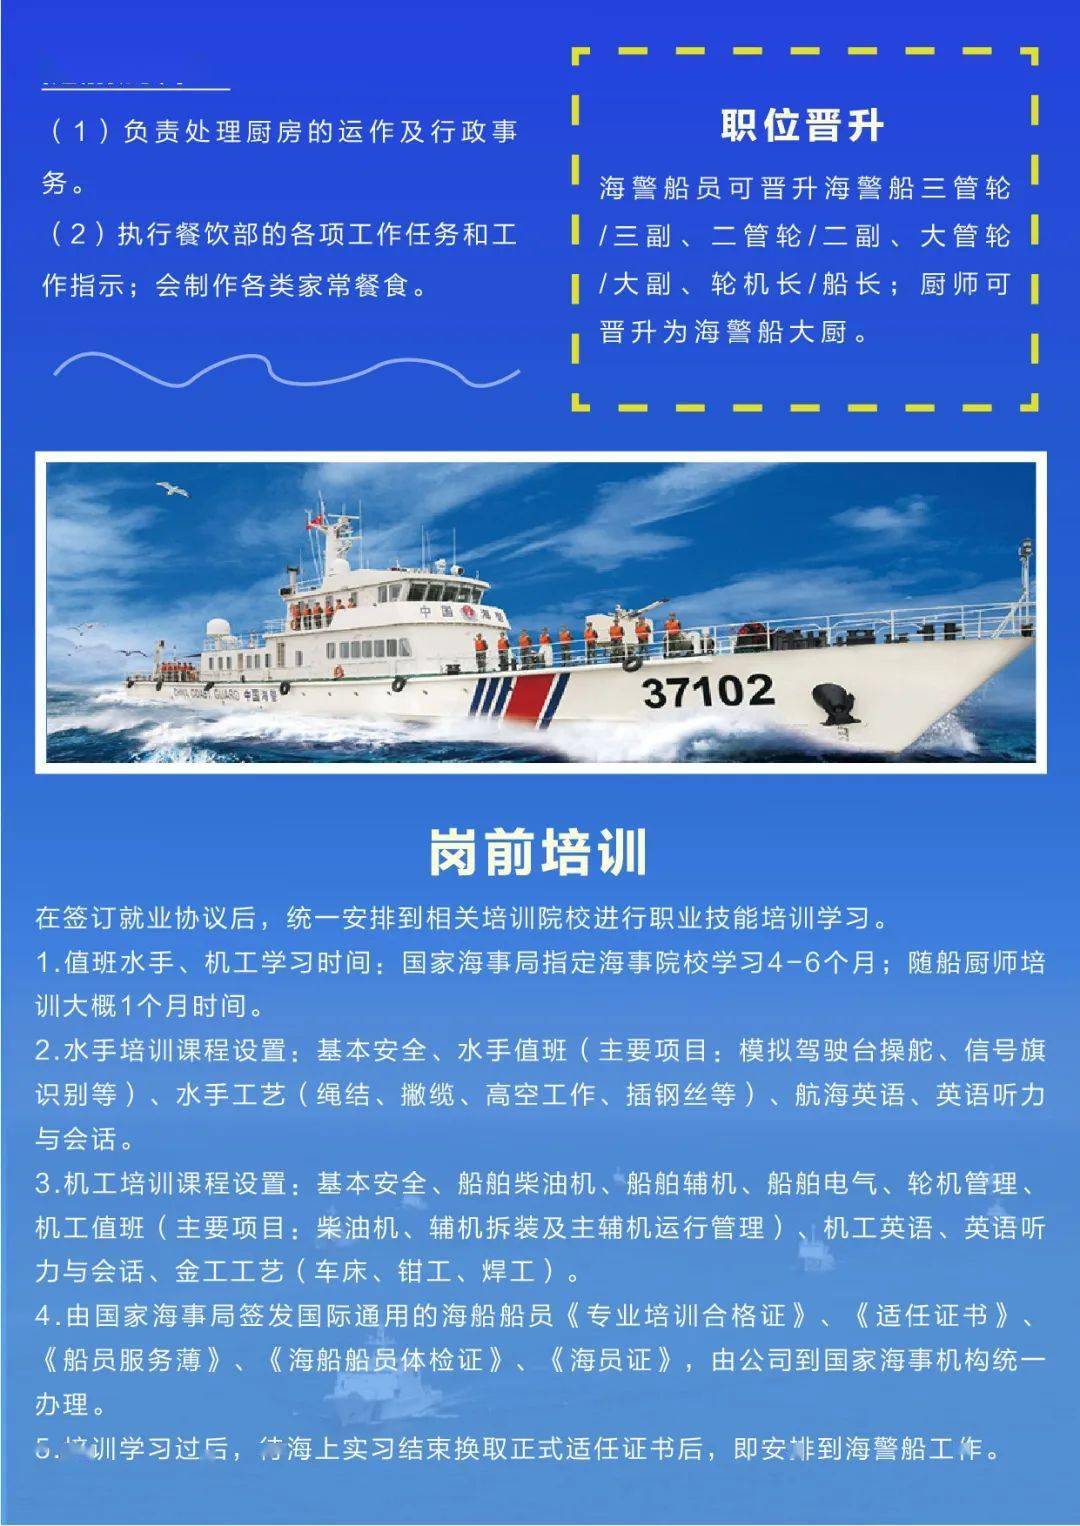 船舶招聘_9000元 国外船员招聘(2)